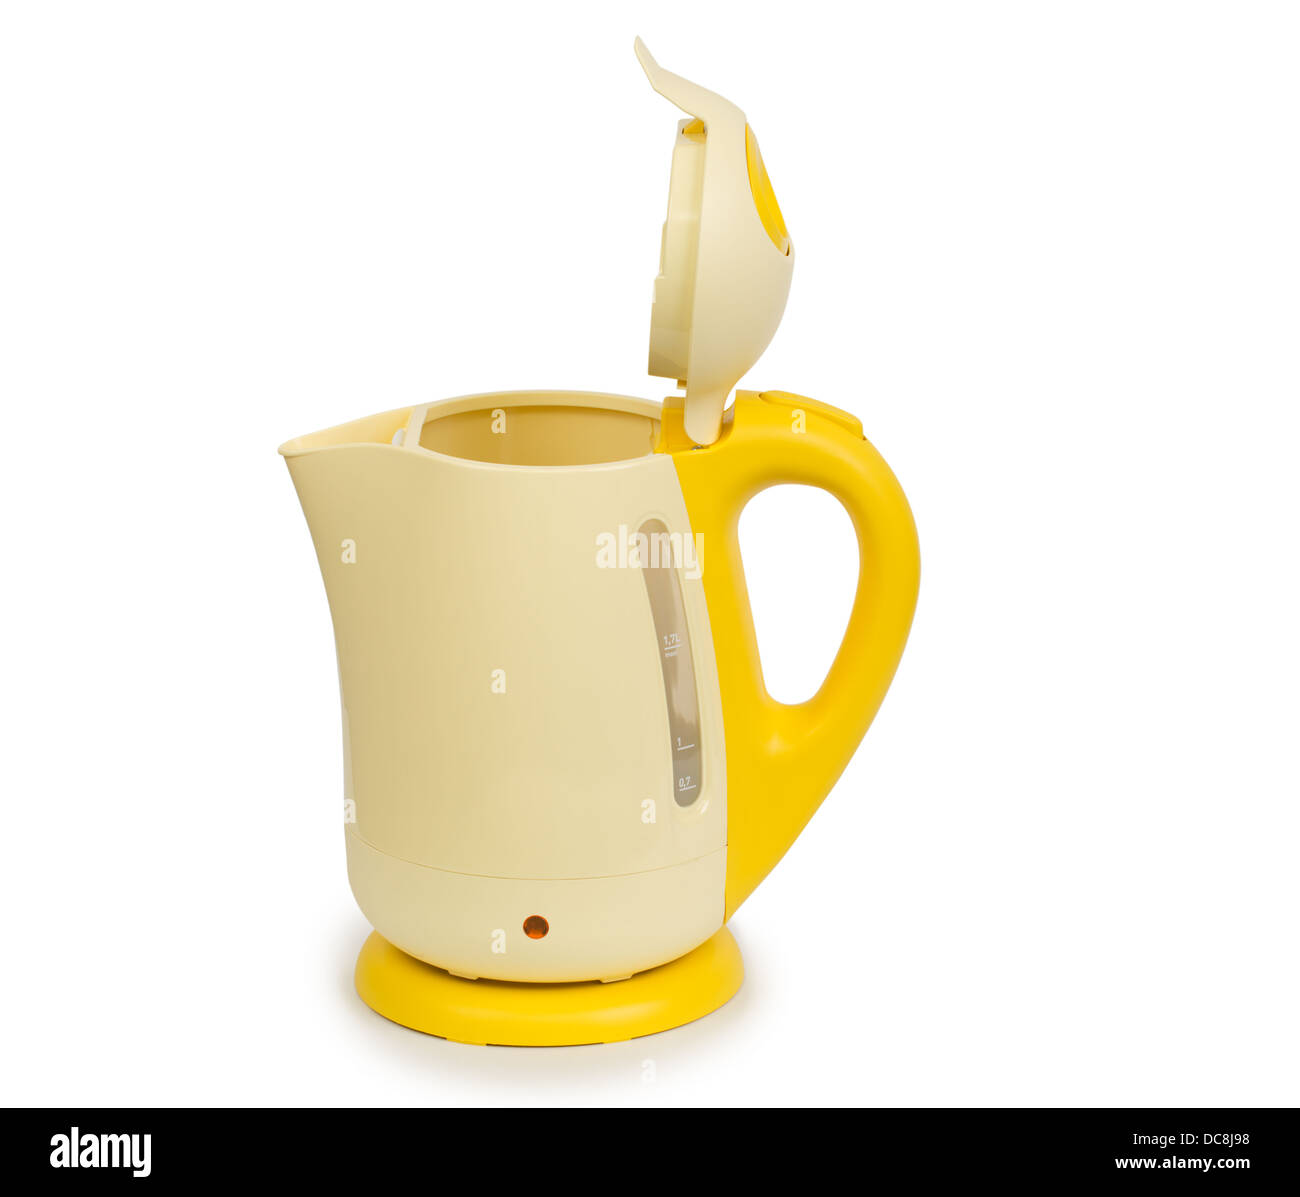 Offenen elektrischen Gelber Tee Wasserkocher isoliert auf weißem Hintergrund Stockfoto